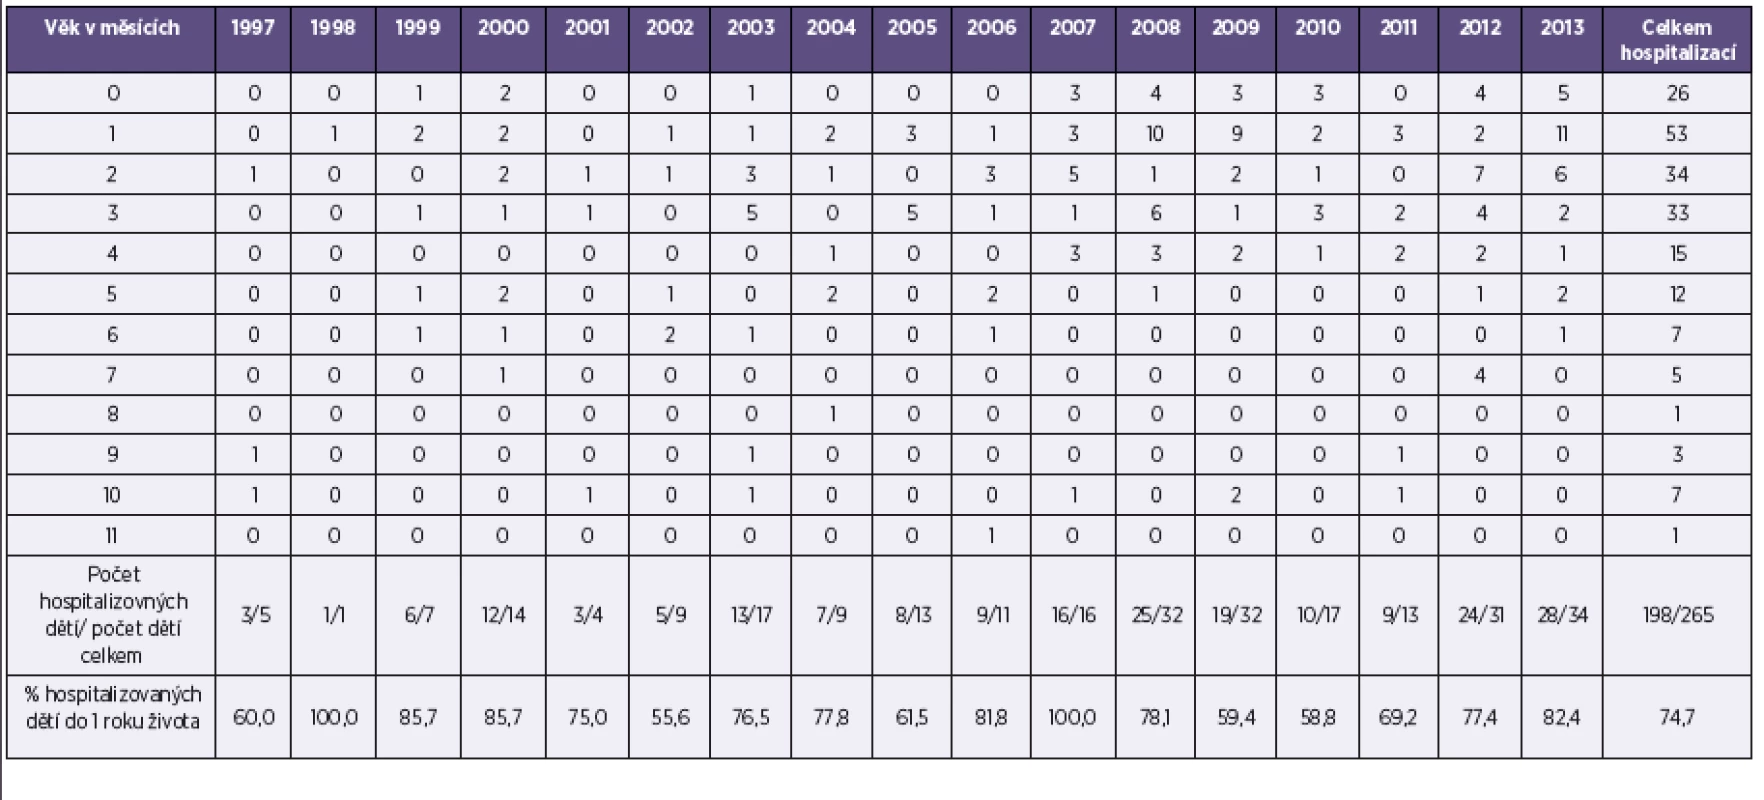 Pertuse, hospitalizované děti do 1 roku života podle měsíců, ČR, 1997–2013
Table 7. Pertussis, number of hospitalized children under one year of age by month, Czech Republic, 1997–2013